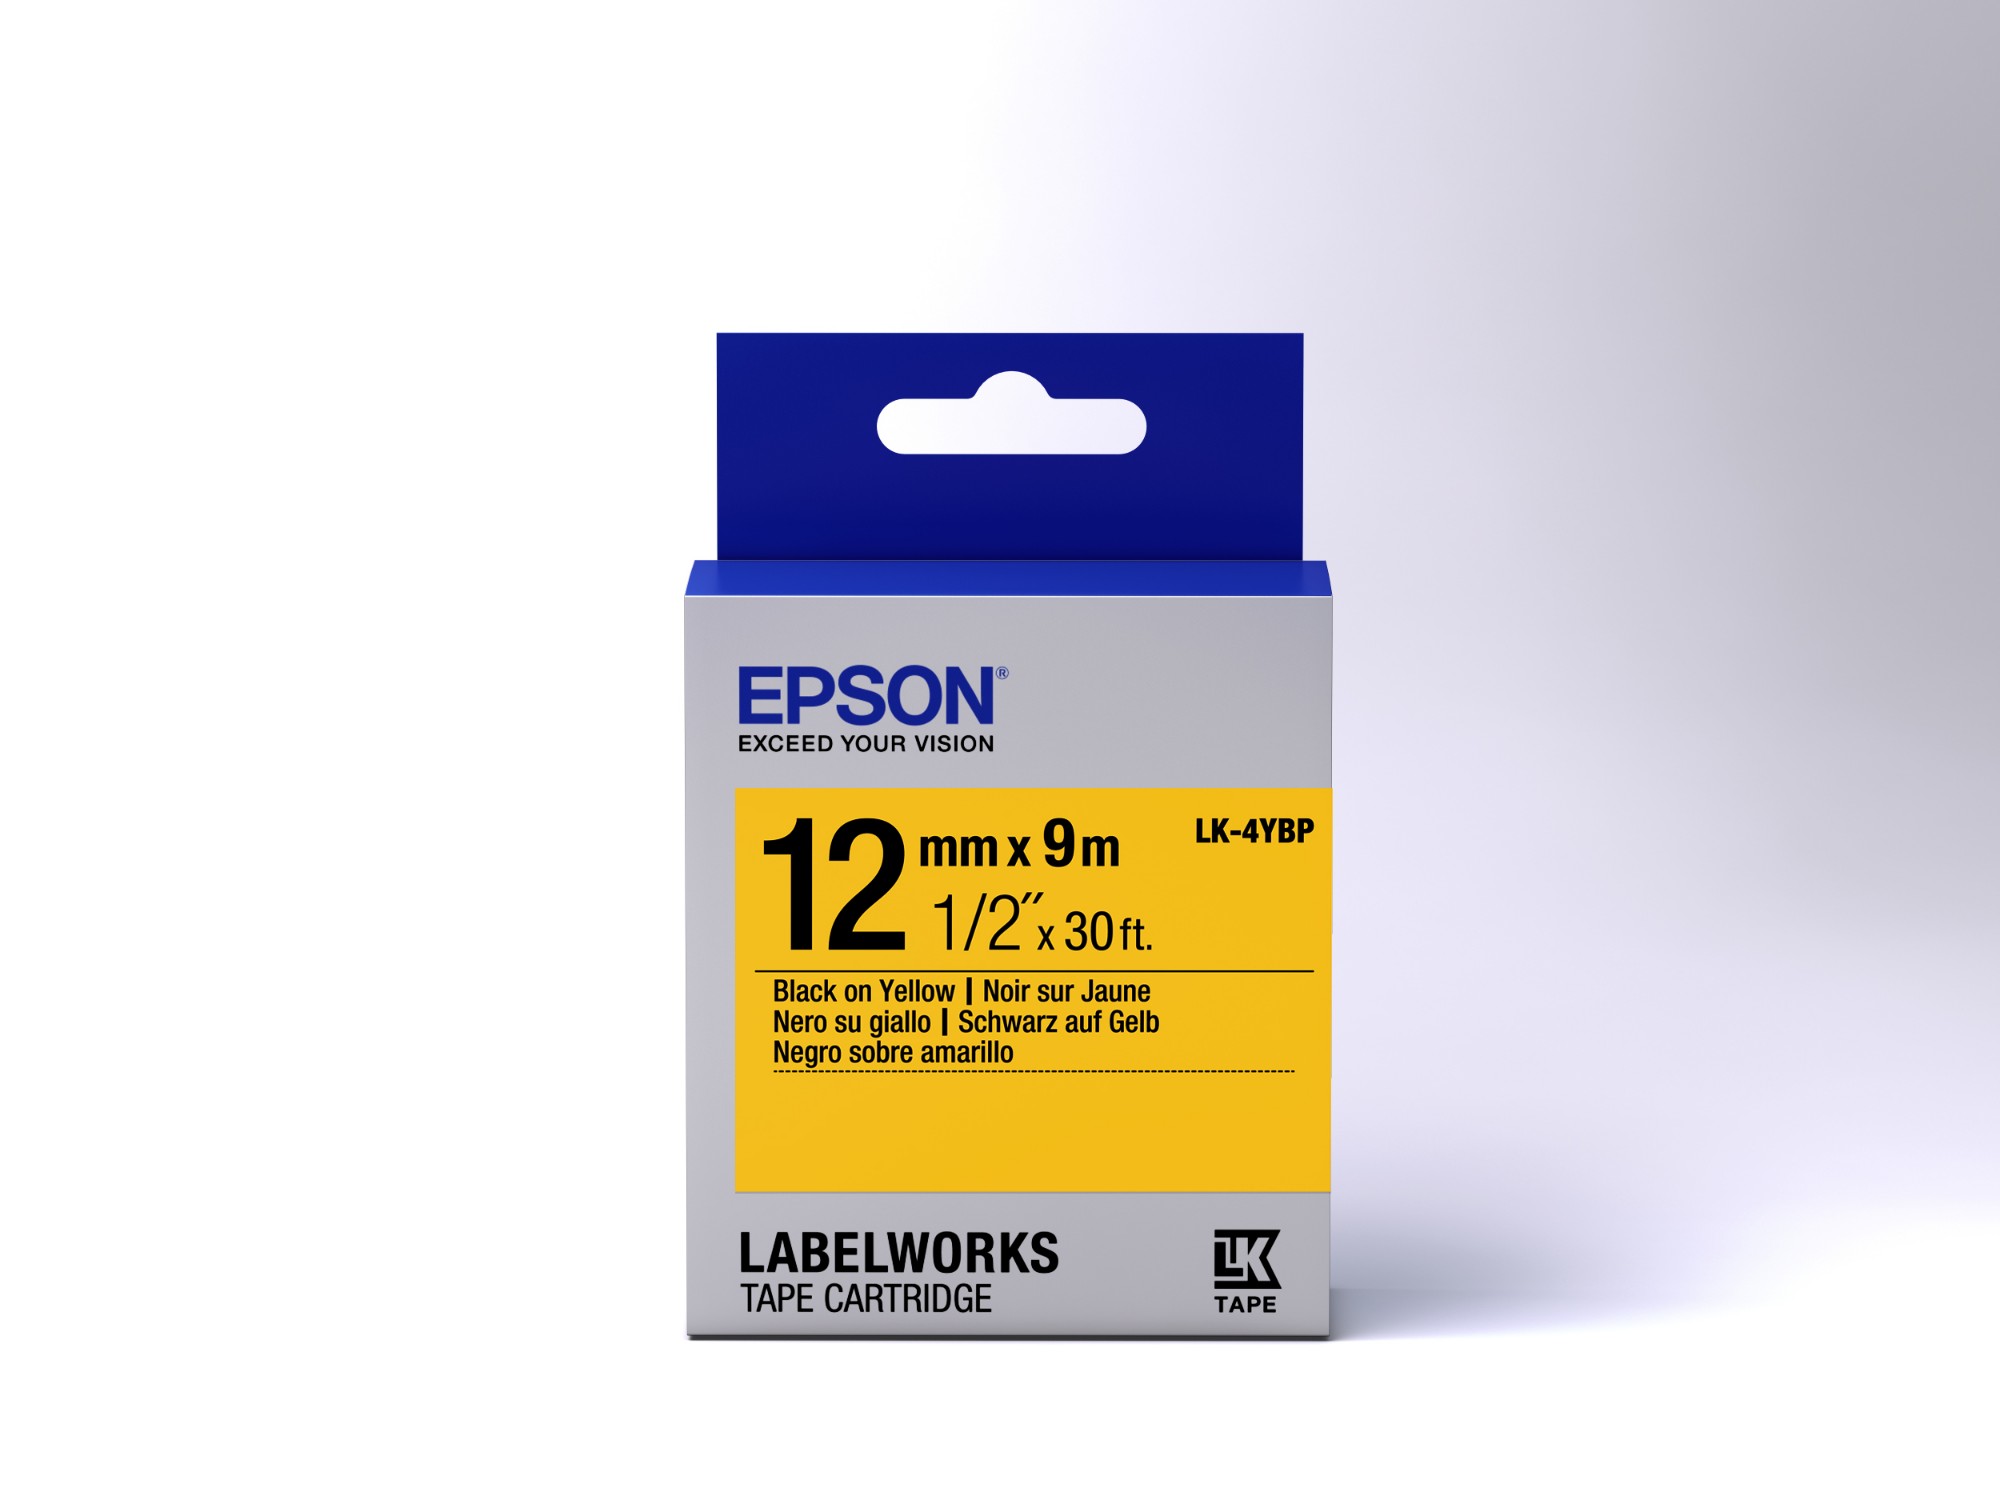 Epson etikettkassett pastell – LK-4YBP pastell svart/gul 12/9